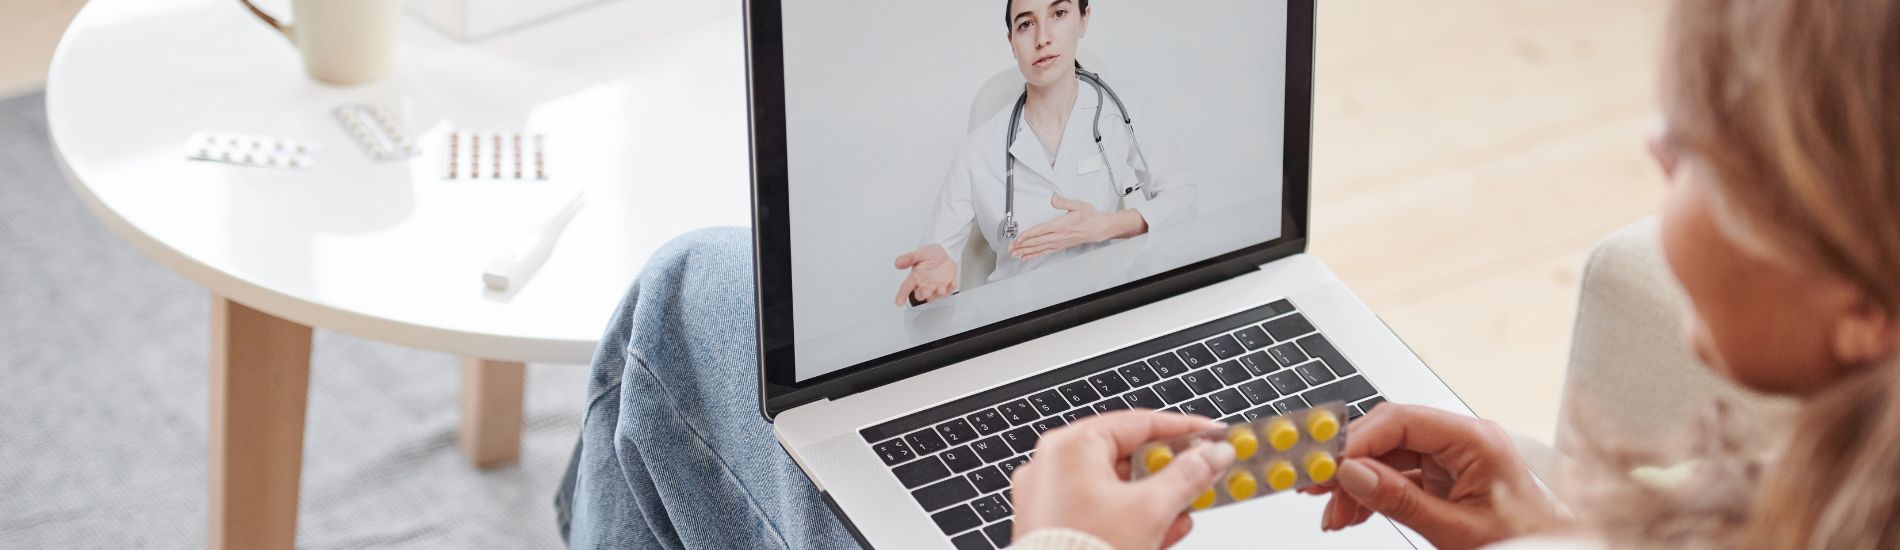 Telemedycyna – jakie prawa regulują konsultacje online z lekarzem?